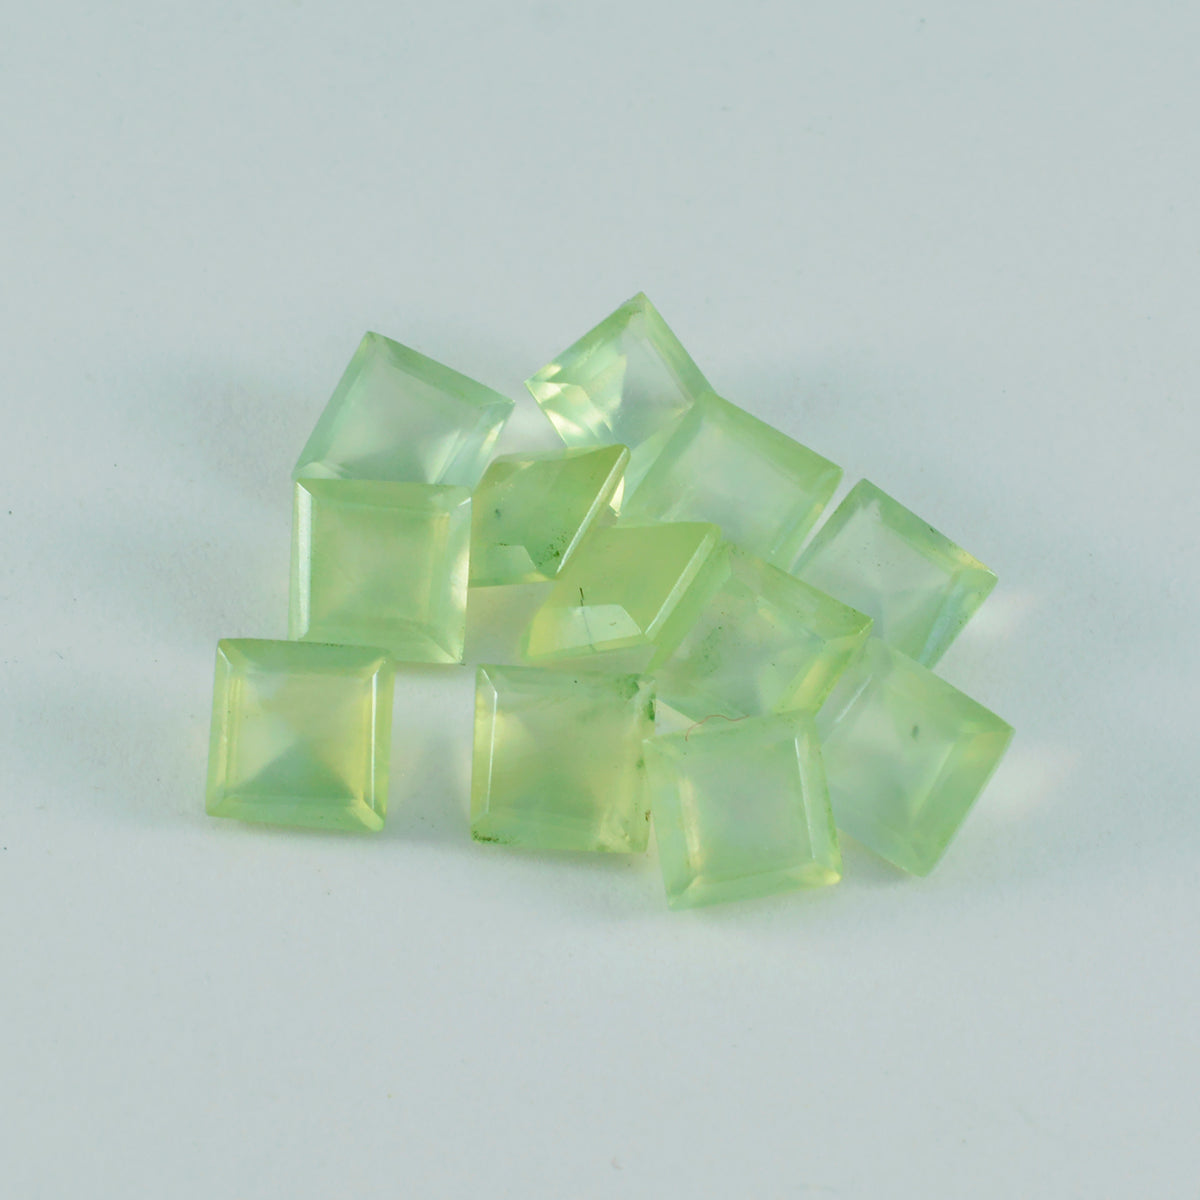 Riyogems 1 Stück grüner Prehnit, facettiert, 6 x 6 mm, quadratische Form, schöner Qualitätsstein